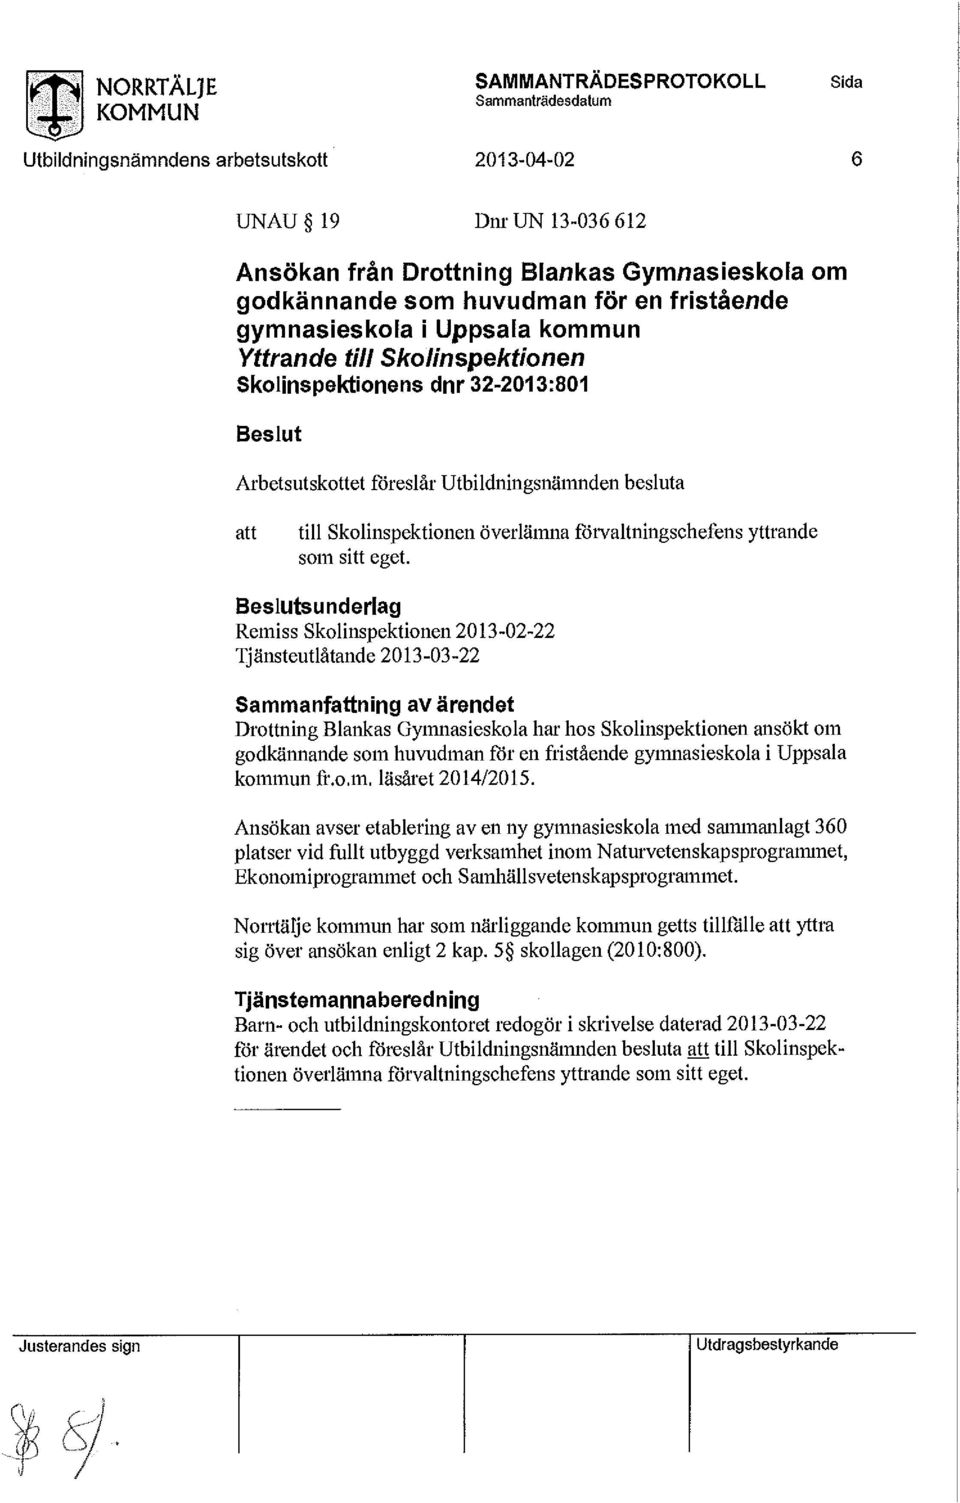 Drottning Blankas Gymnasieskola har hos Skolinspektionen ansökt om godkännande som huvudman för en fristående gymnasieskola i Uppsala kommun fr.o.m. läsåret 2014/2015.